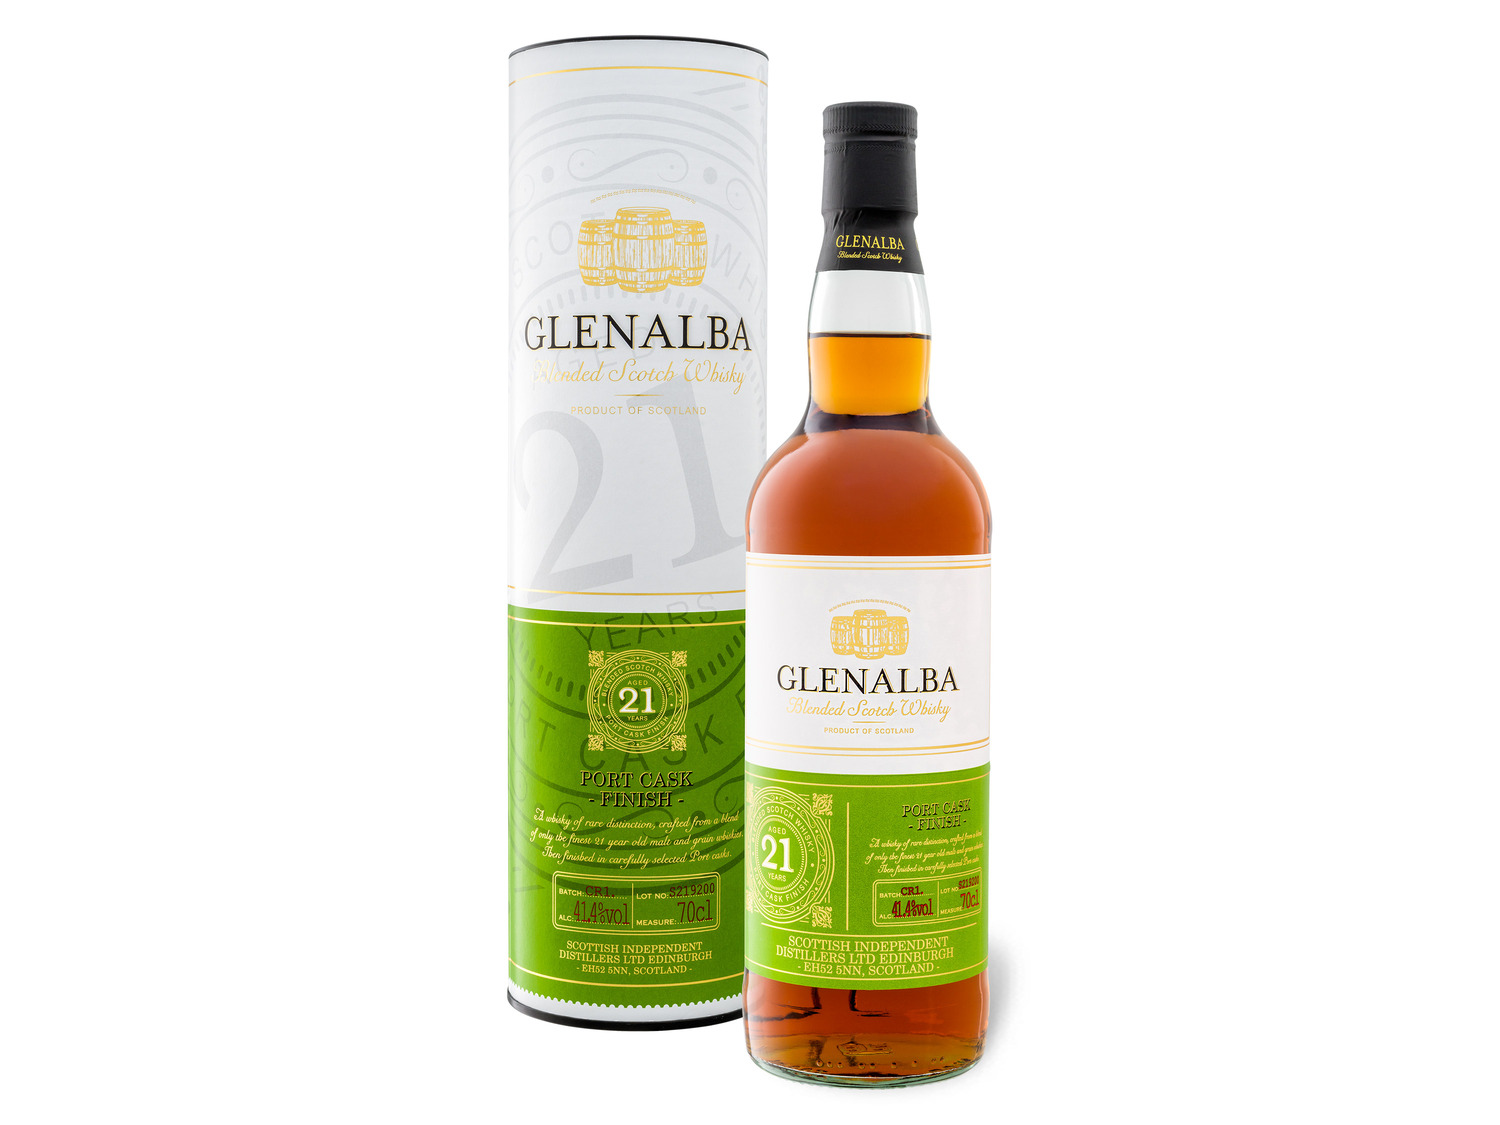 Glenalba Blended Scotch Whisky 21 Jahre Port Cask Finish 41 4% Vol